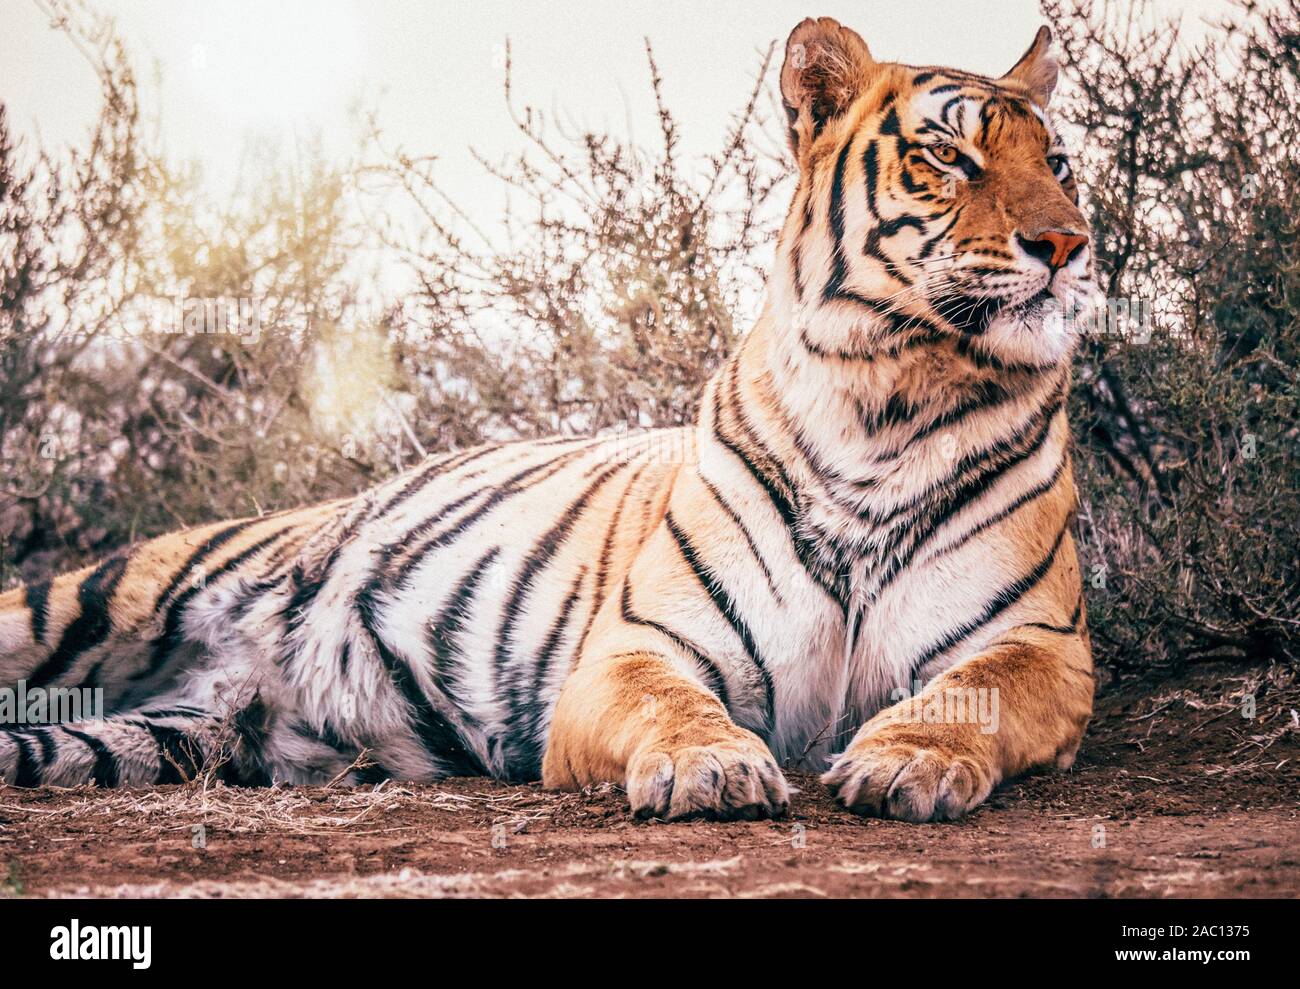 Una selvaggia tigre del Bengala (Panthera tigris tigris) giacenti in una posa rilassata nel suo ambiente naturale, con la sua testa alta, cercando di regal e maestoso. Foto Stock